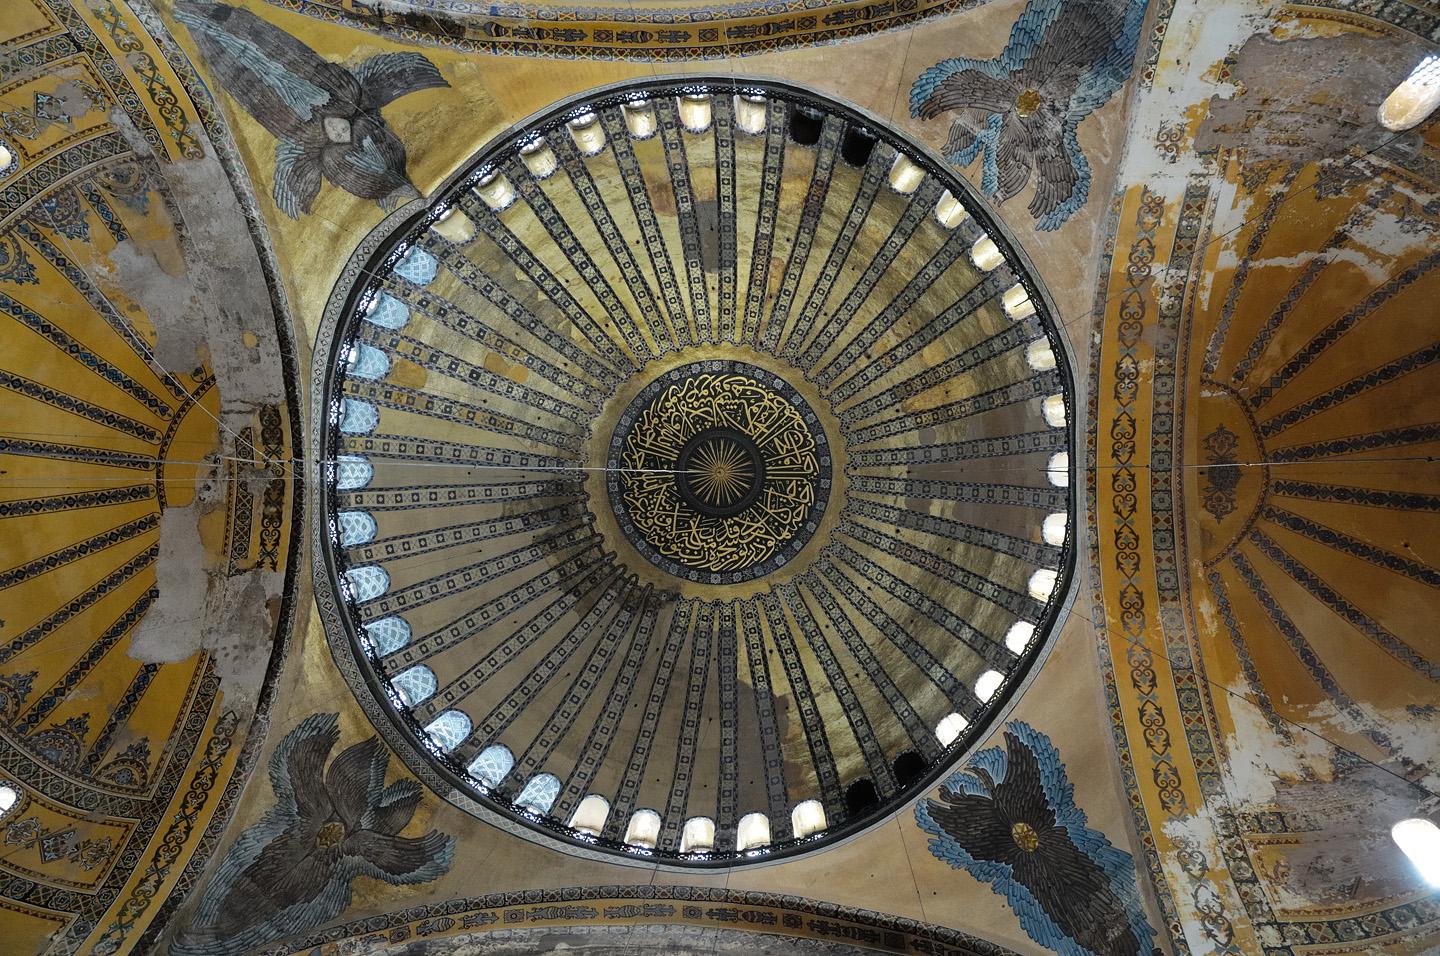 7.4 Interior of dome 
 			
